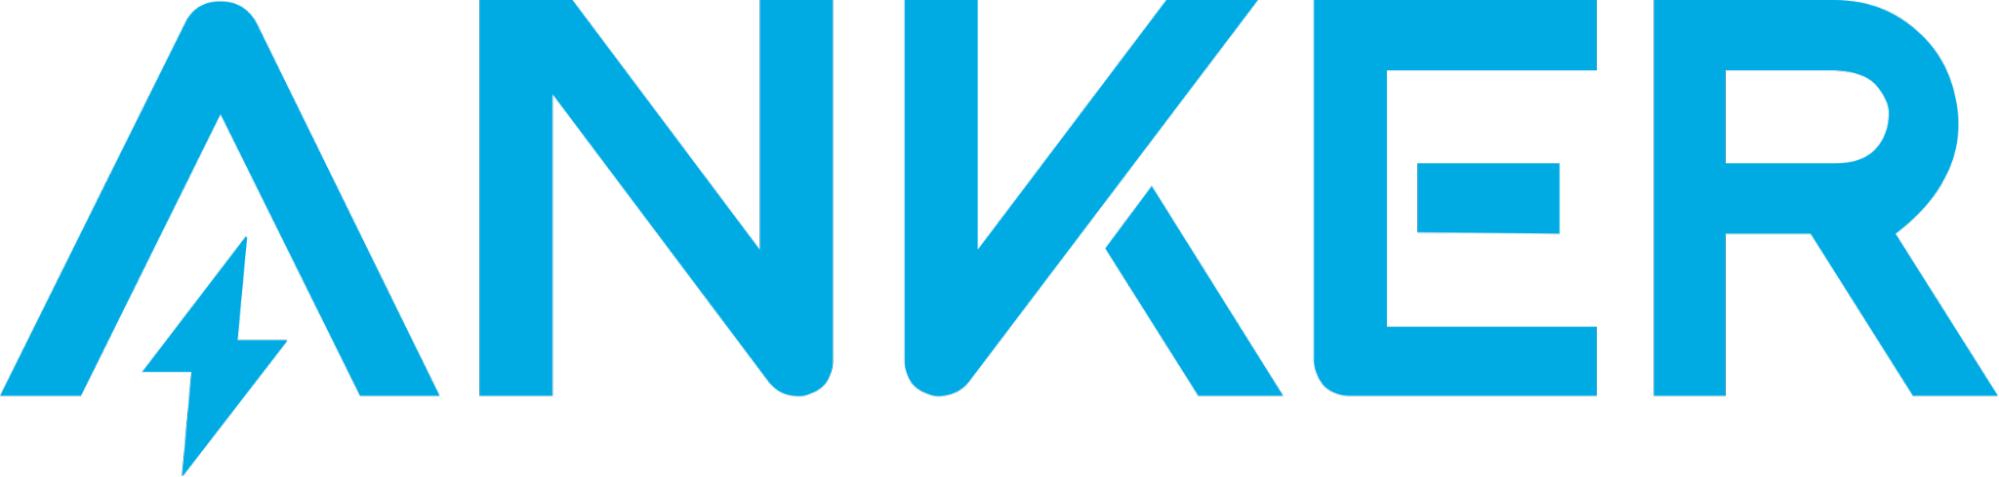 Anker company logo